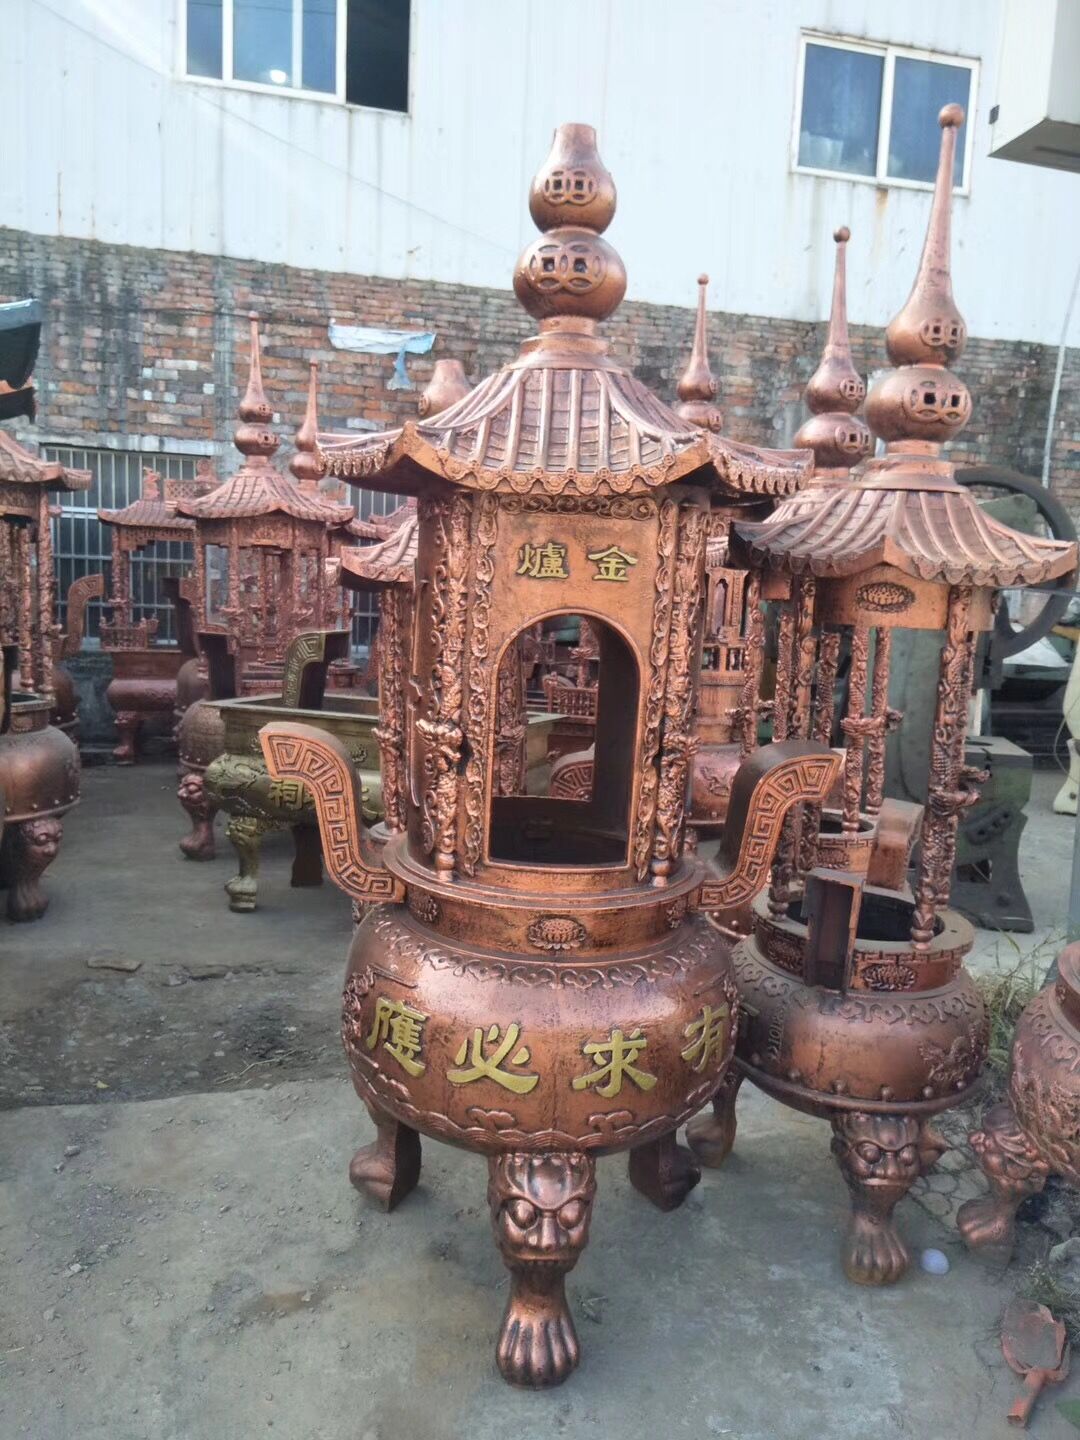 化纸炉，温州香炉厂家直销公墓烧纸炉，铸铜焚经炉，六角二层烧纸炉